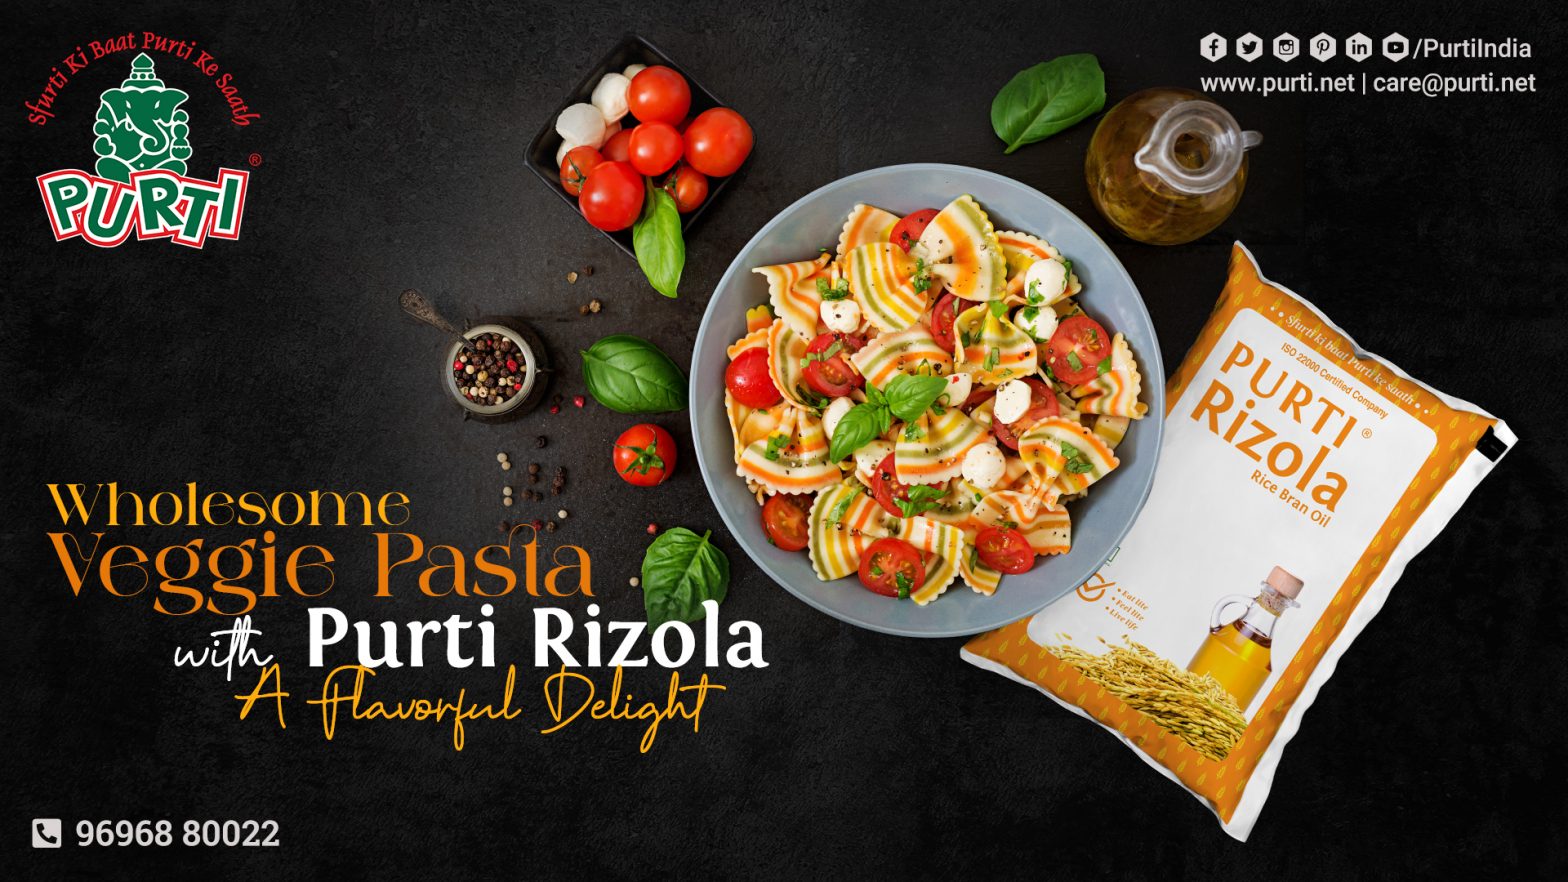 Wholesome Veggie Pasta with Purti Rizola Rice Bran Oil: A Flavorful Delight